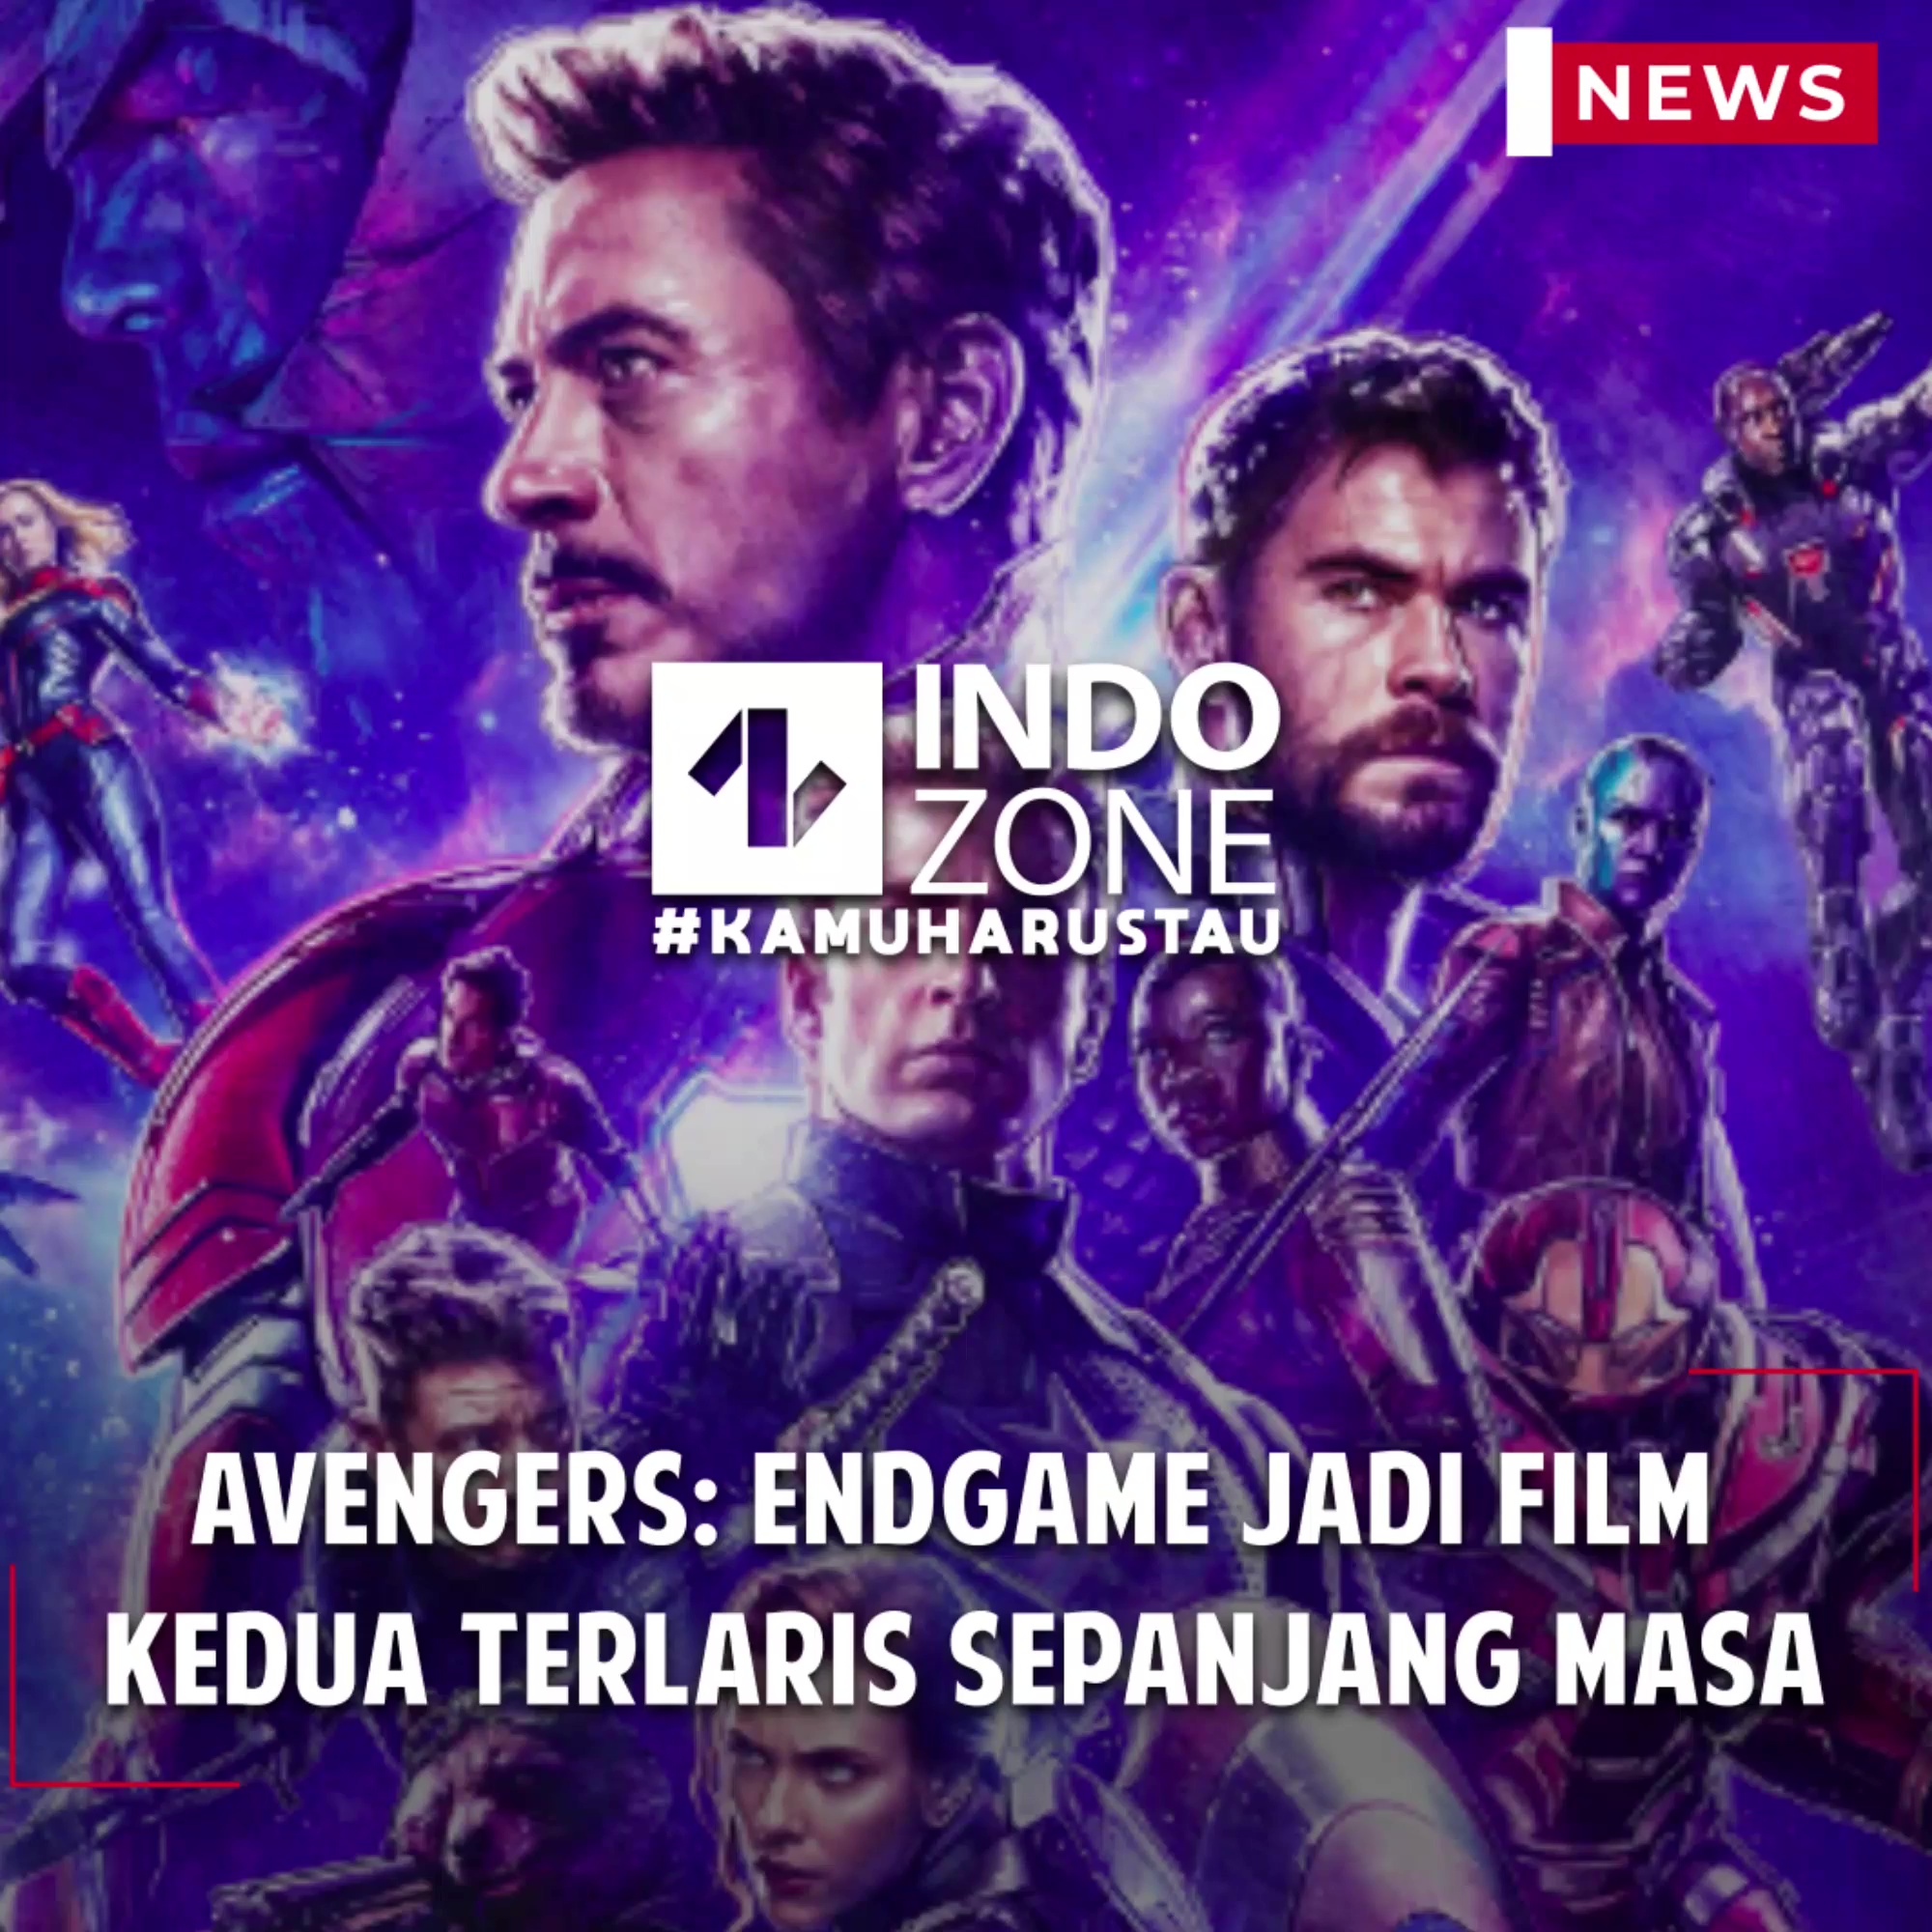 Avengers: Endgame Jadi Film Kedua Terlaris Sepanjang Masa